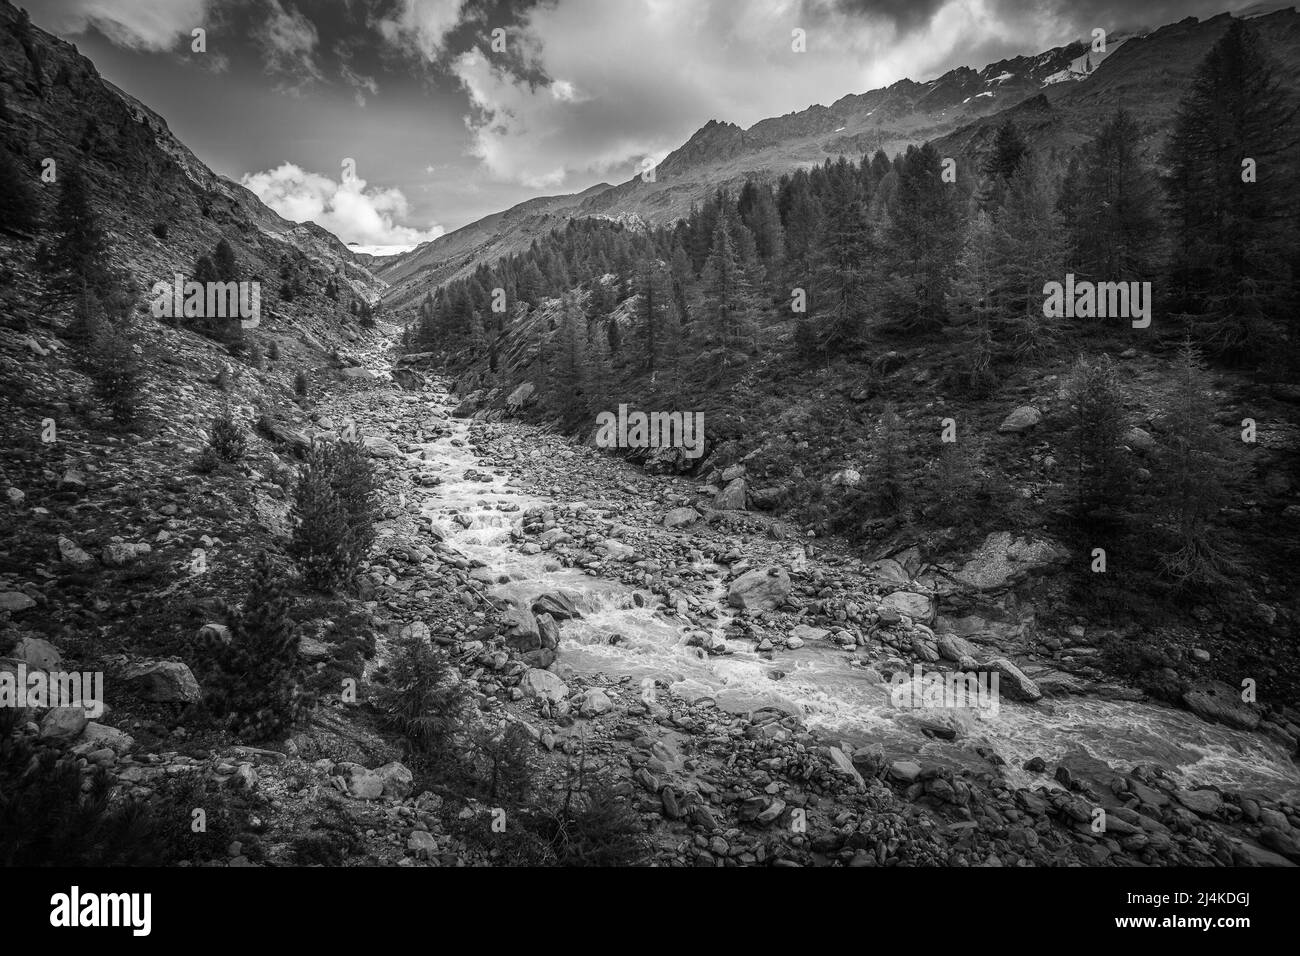 Effet noir et blanc d'un ruisseau impétueux dans une vallée alpine Banque D'Images